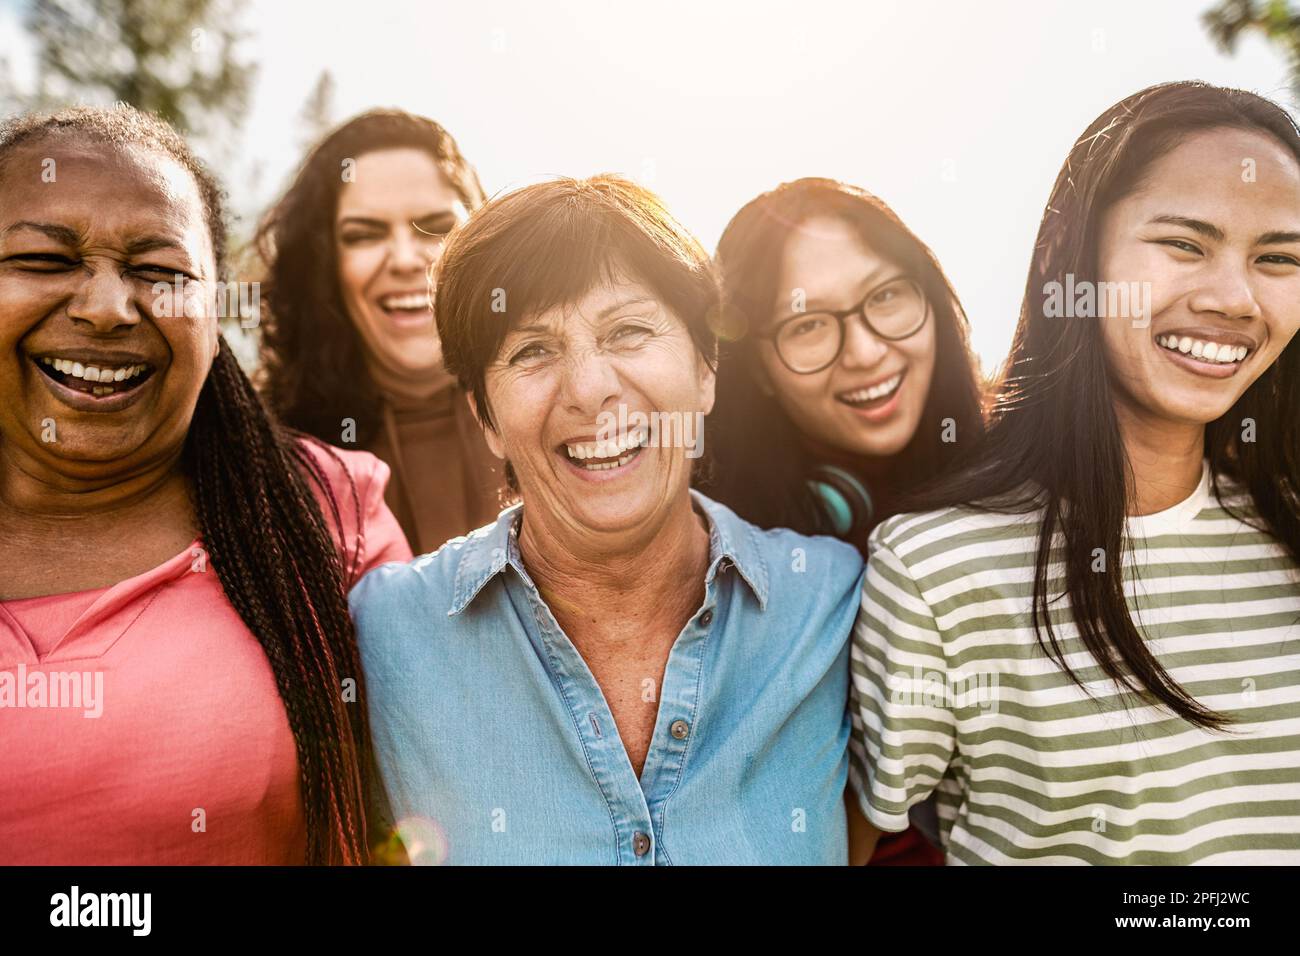 Glückliche Frauen aus mehreren Generationen mit unterschiedlichem Alter und unterschiedlicher ethnischer Zugehörigkeit, die in einem öffentlichen Park vor der Kamera lächeln Stockfoto